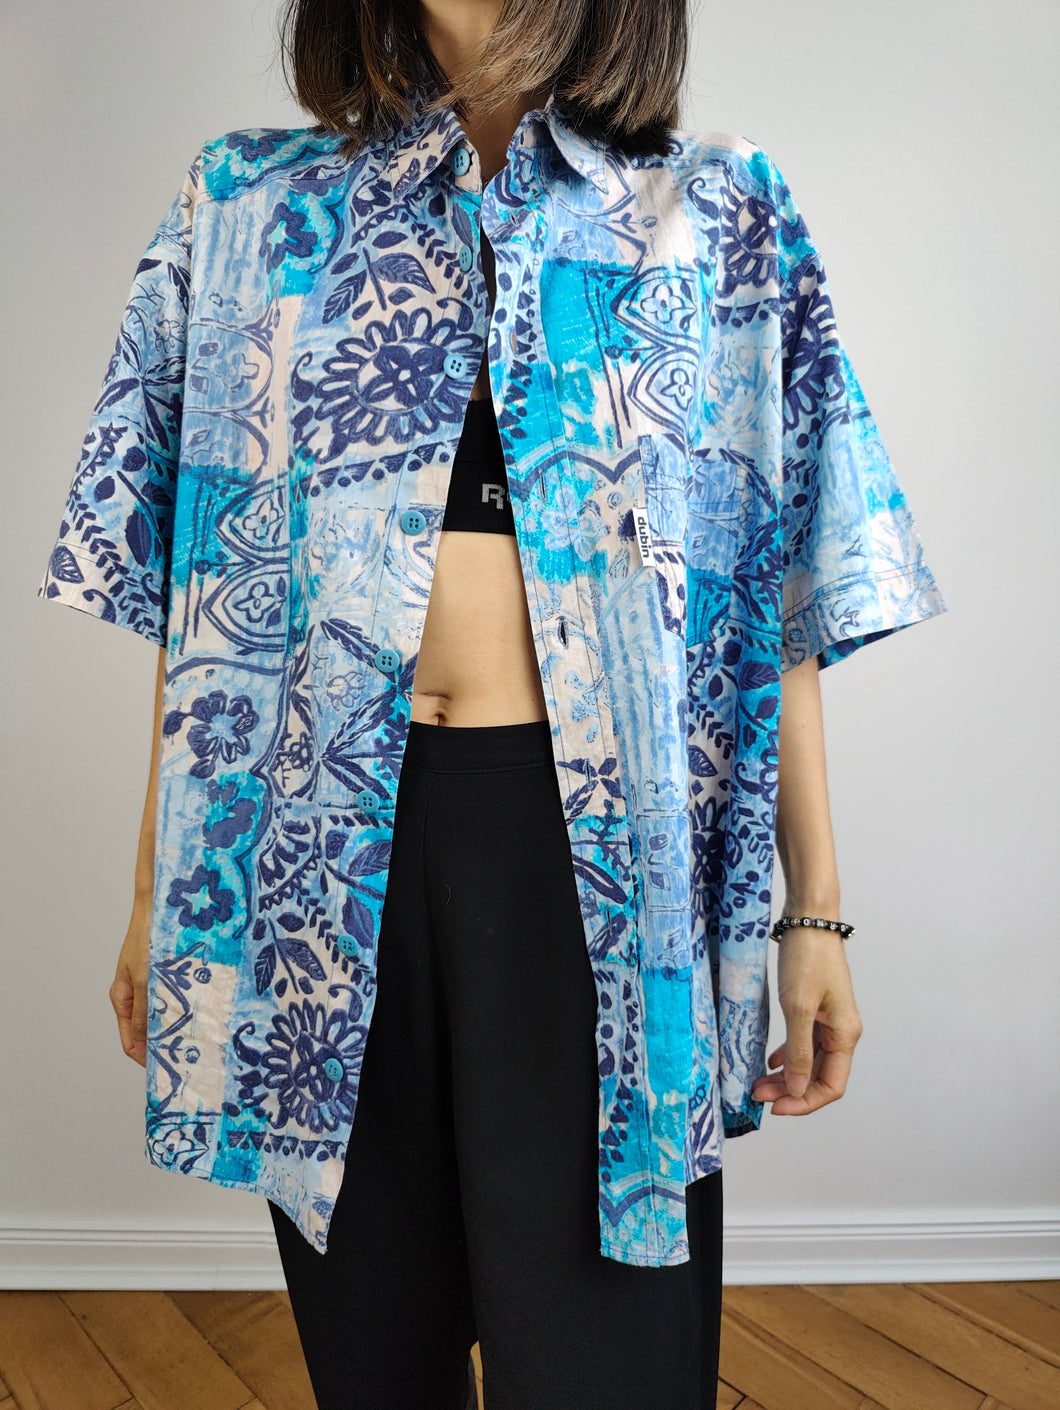 Das baumwollblaue Hemd mit tropischem Print | Vintage Dubin Kurzarm-Oberteil mit verrücktem Muster, Unisex, Herren, M